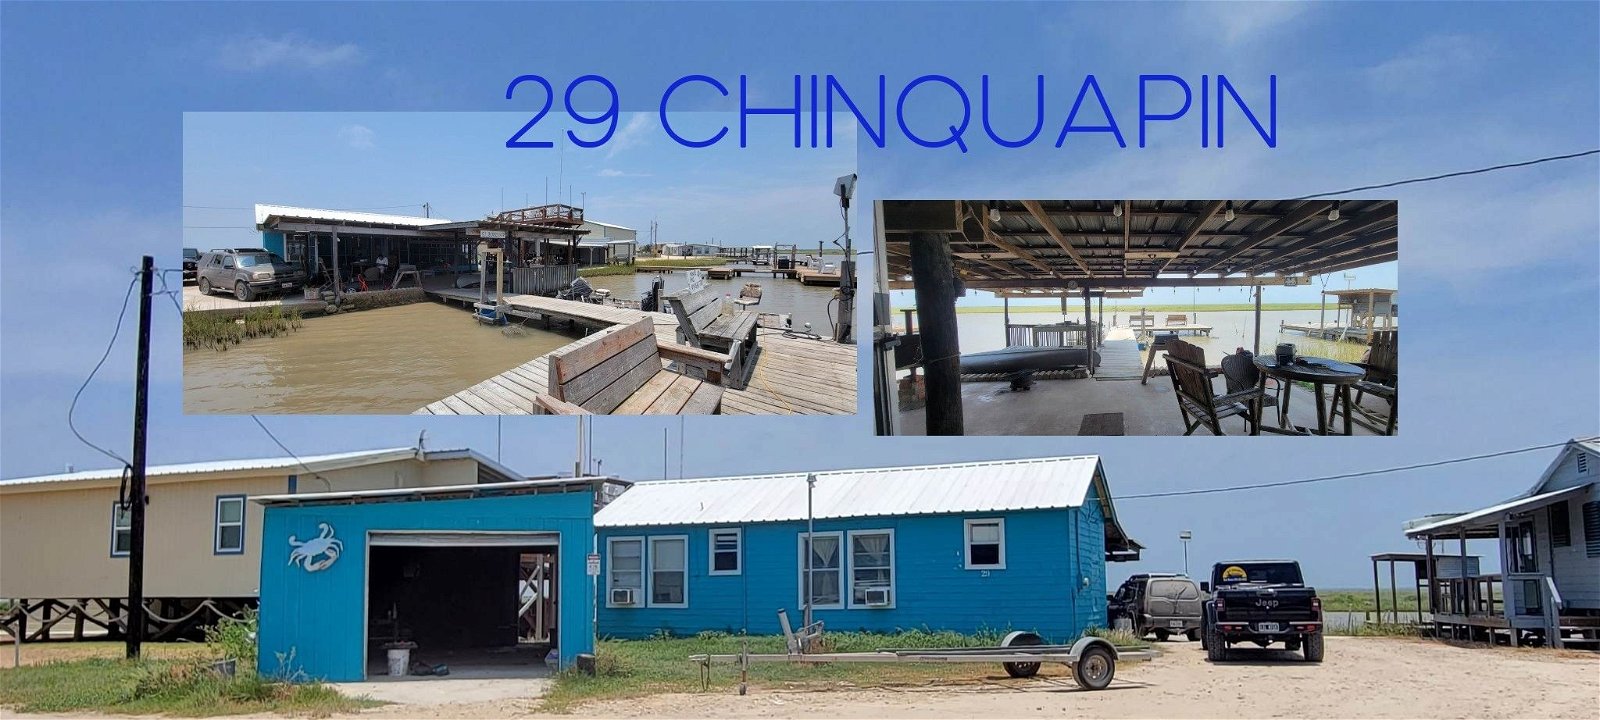 Real estate property located at 29 Chinquapin Rd, Matagorda, Matagorda, TX, US